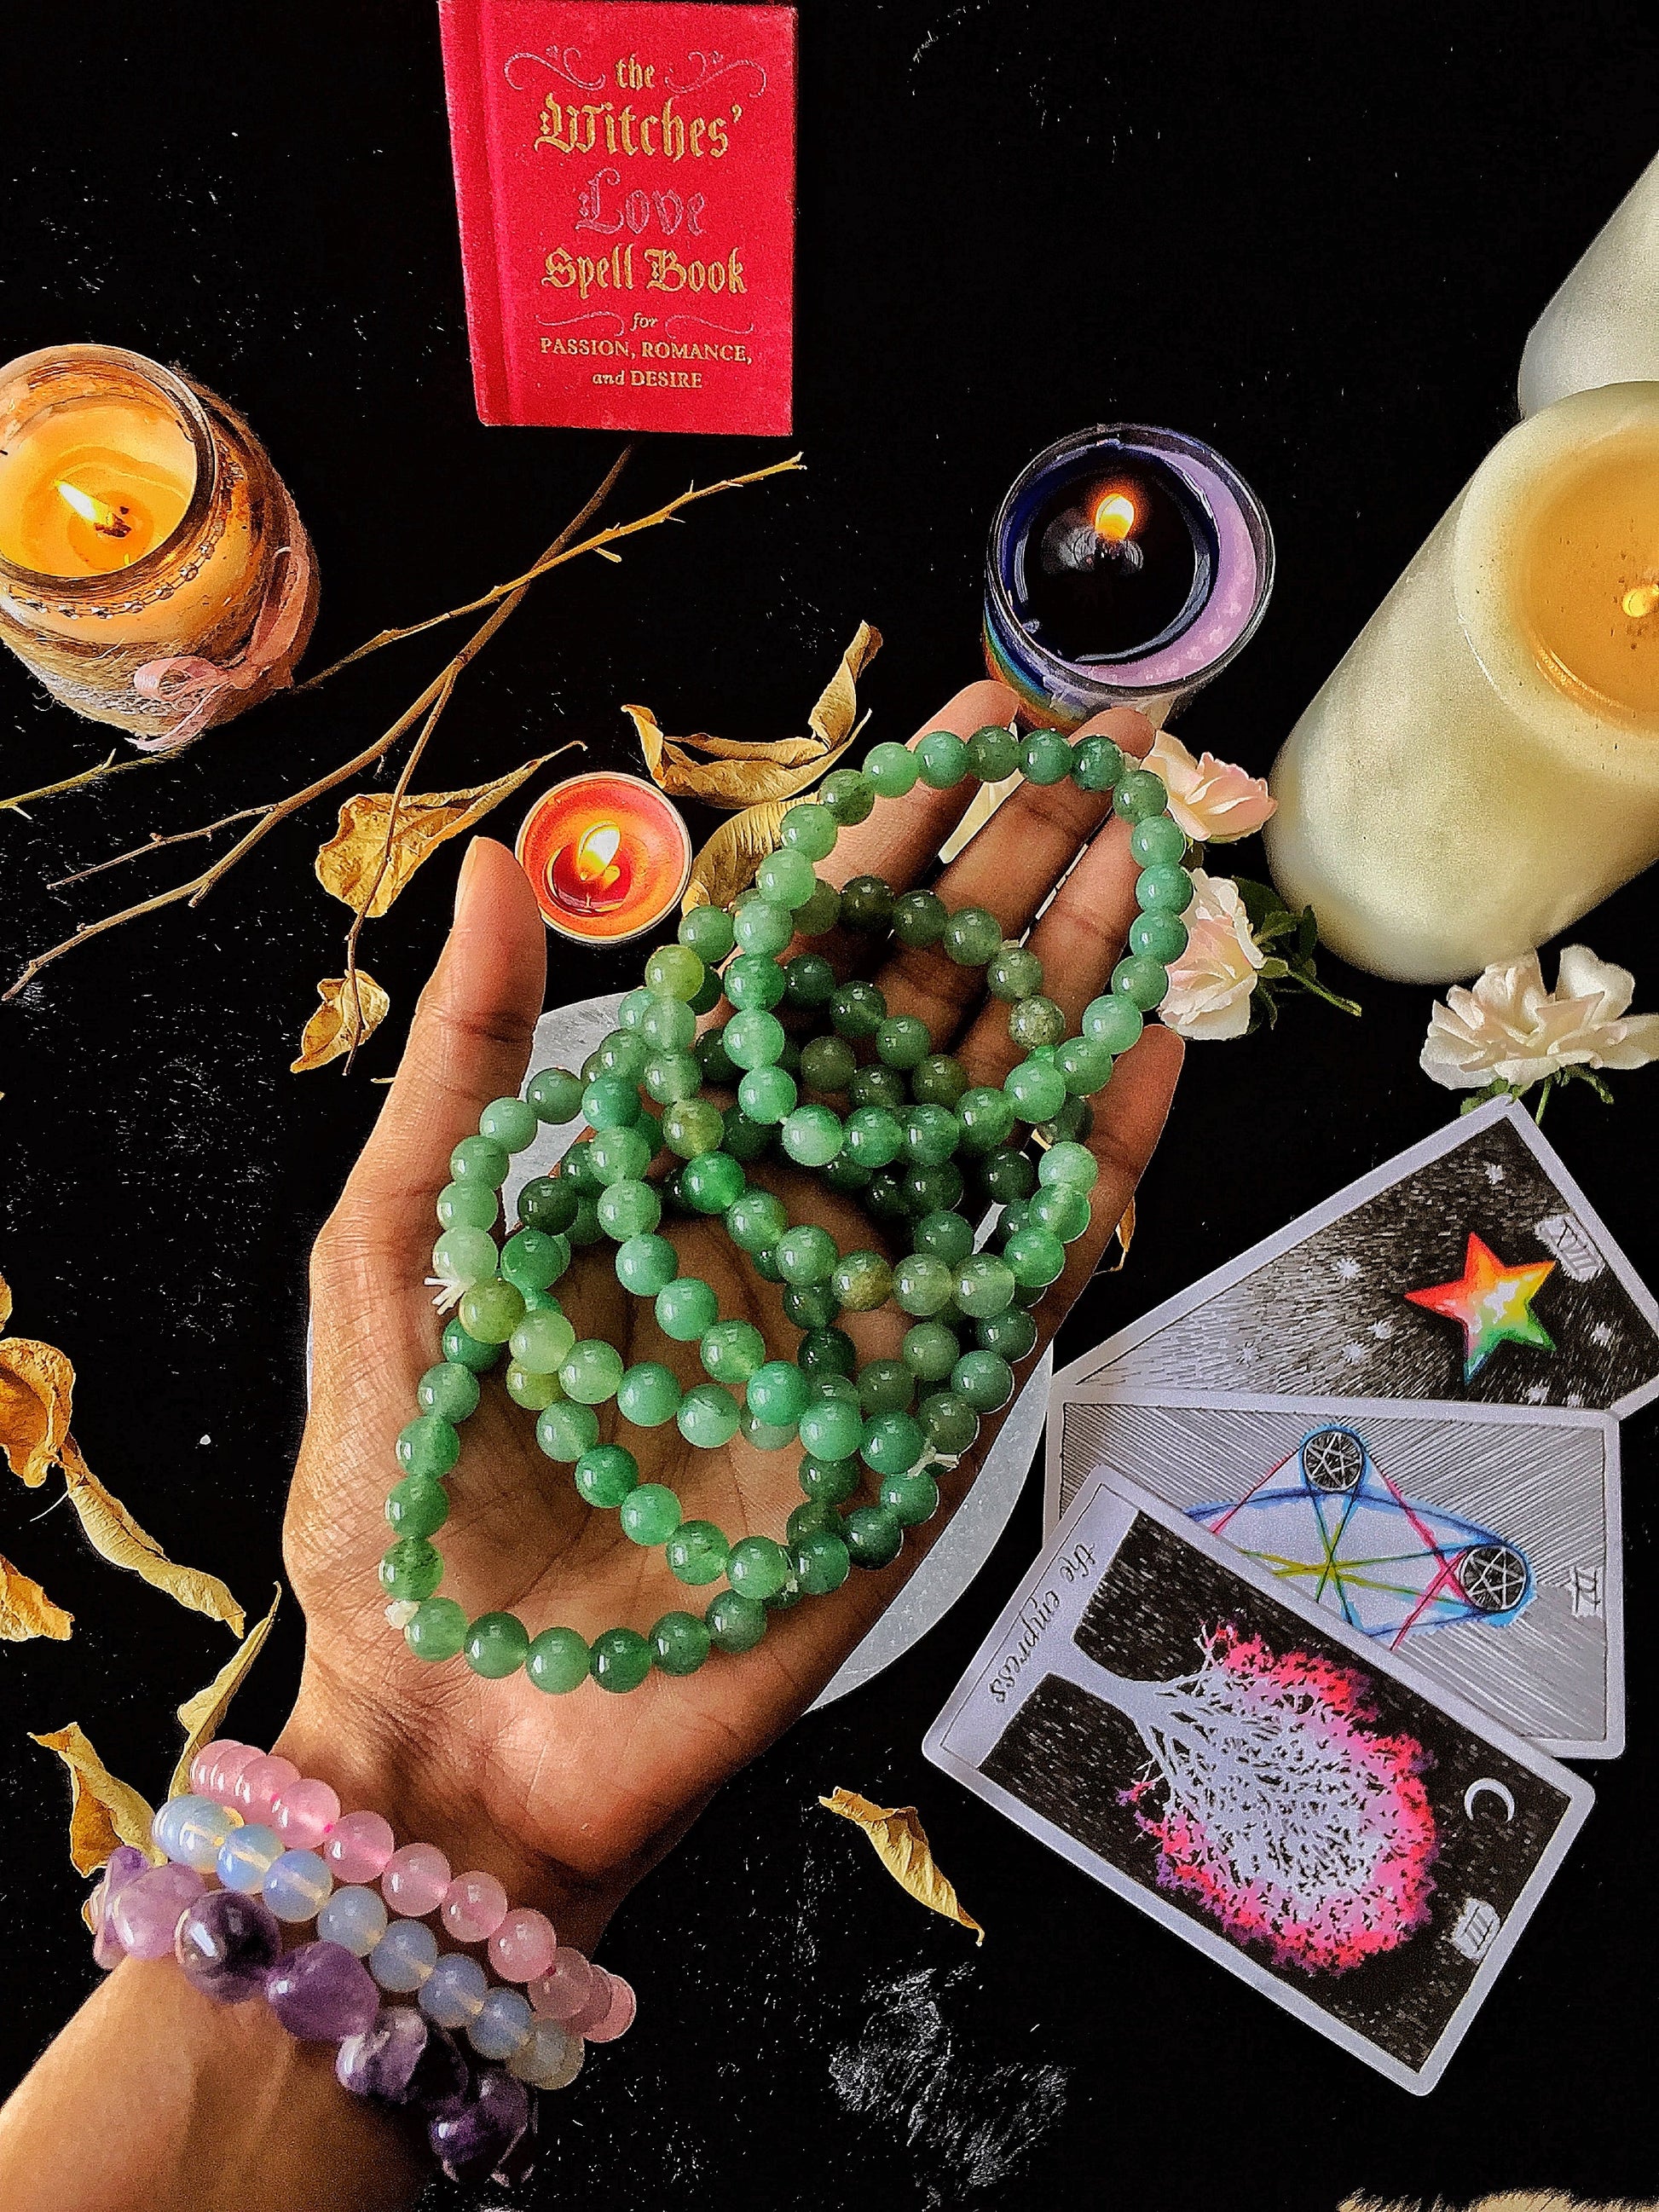 Green Aventurine Bracelet | Stone Of Abundance & Prosperity Crystal